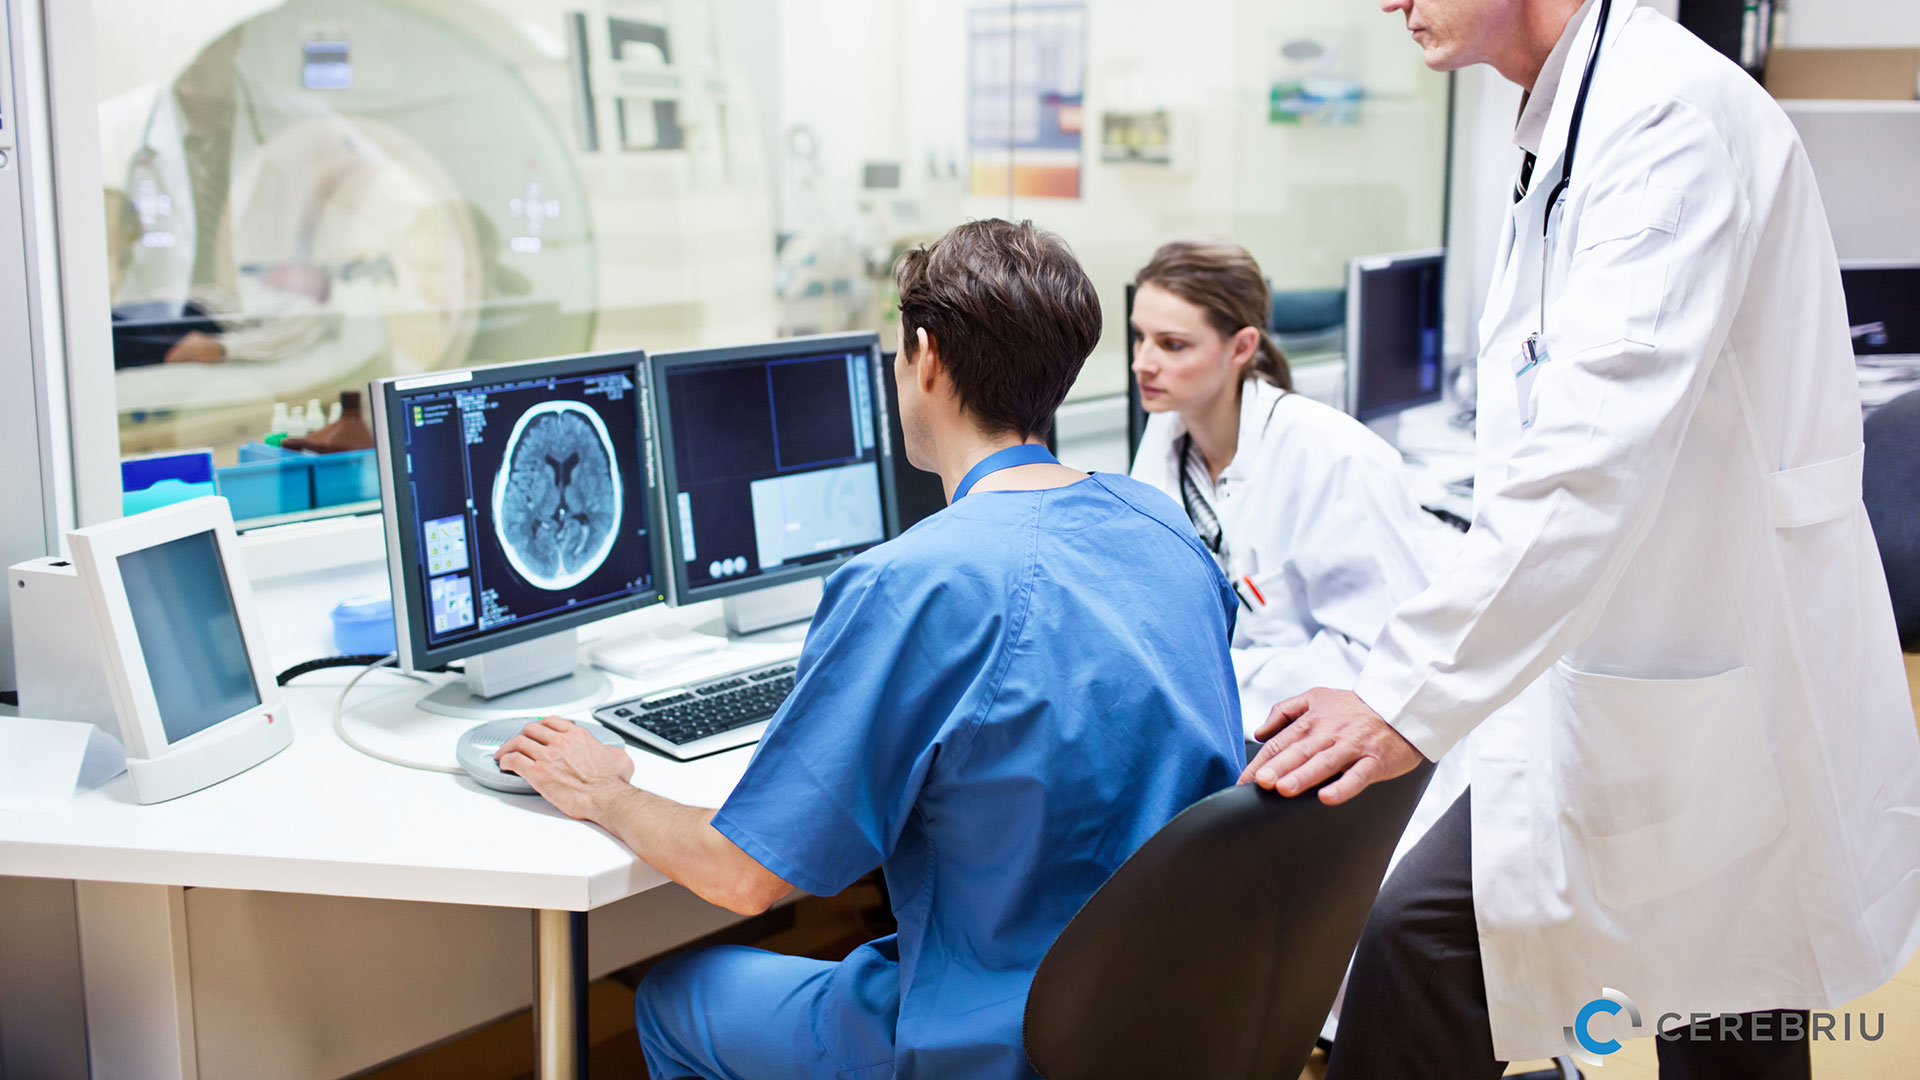 The role of MRI in stroke care with Cerebriu Apollo